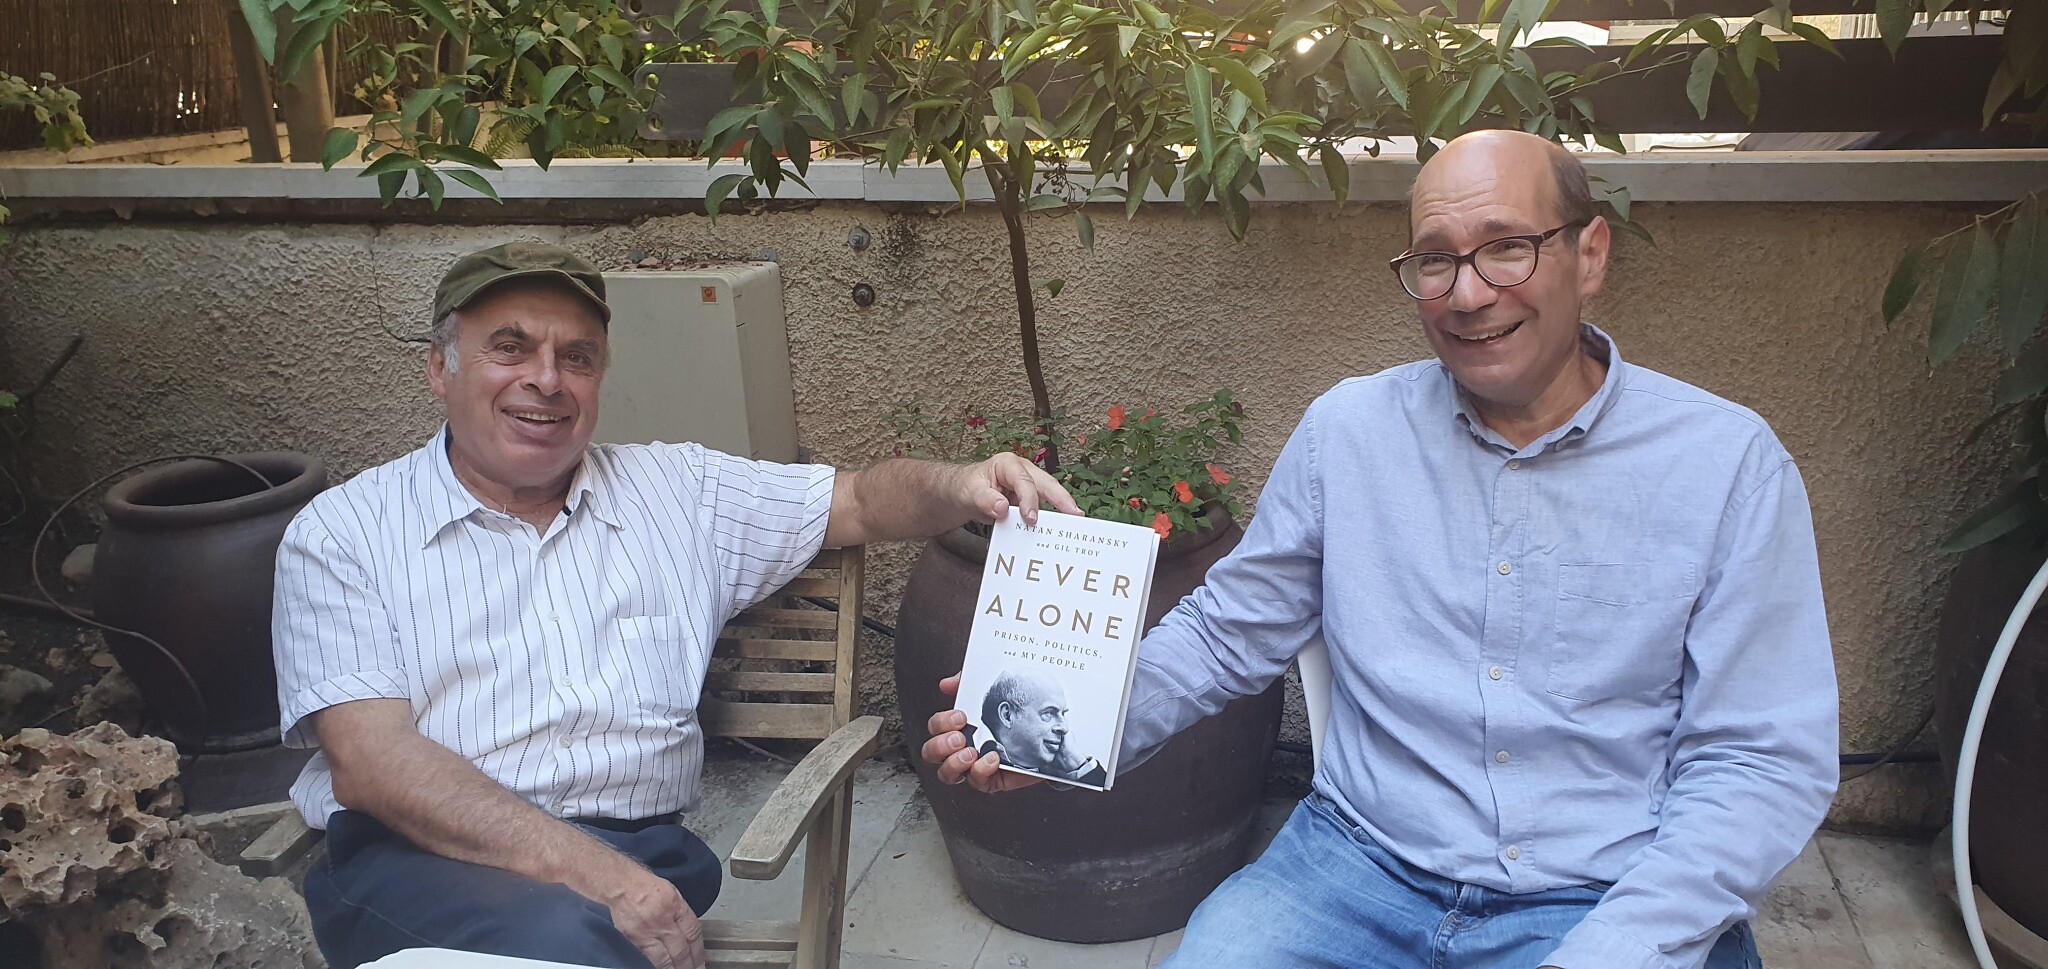 Les co-auteurs Natan Sharansky et Gil Troy, à droite, avec leur nouveau livre "Never Alone" (Crédit : Larissa Ruthman) 